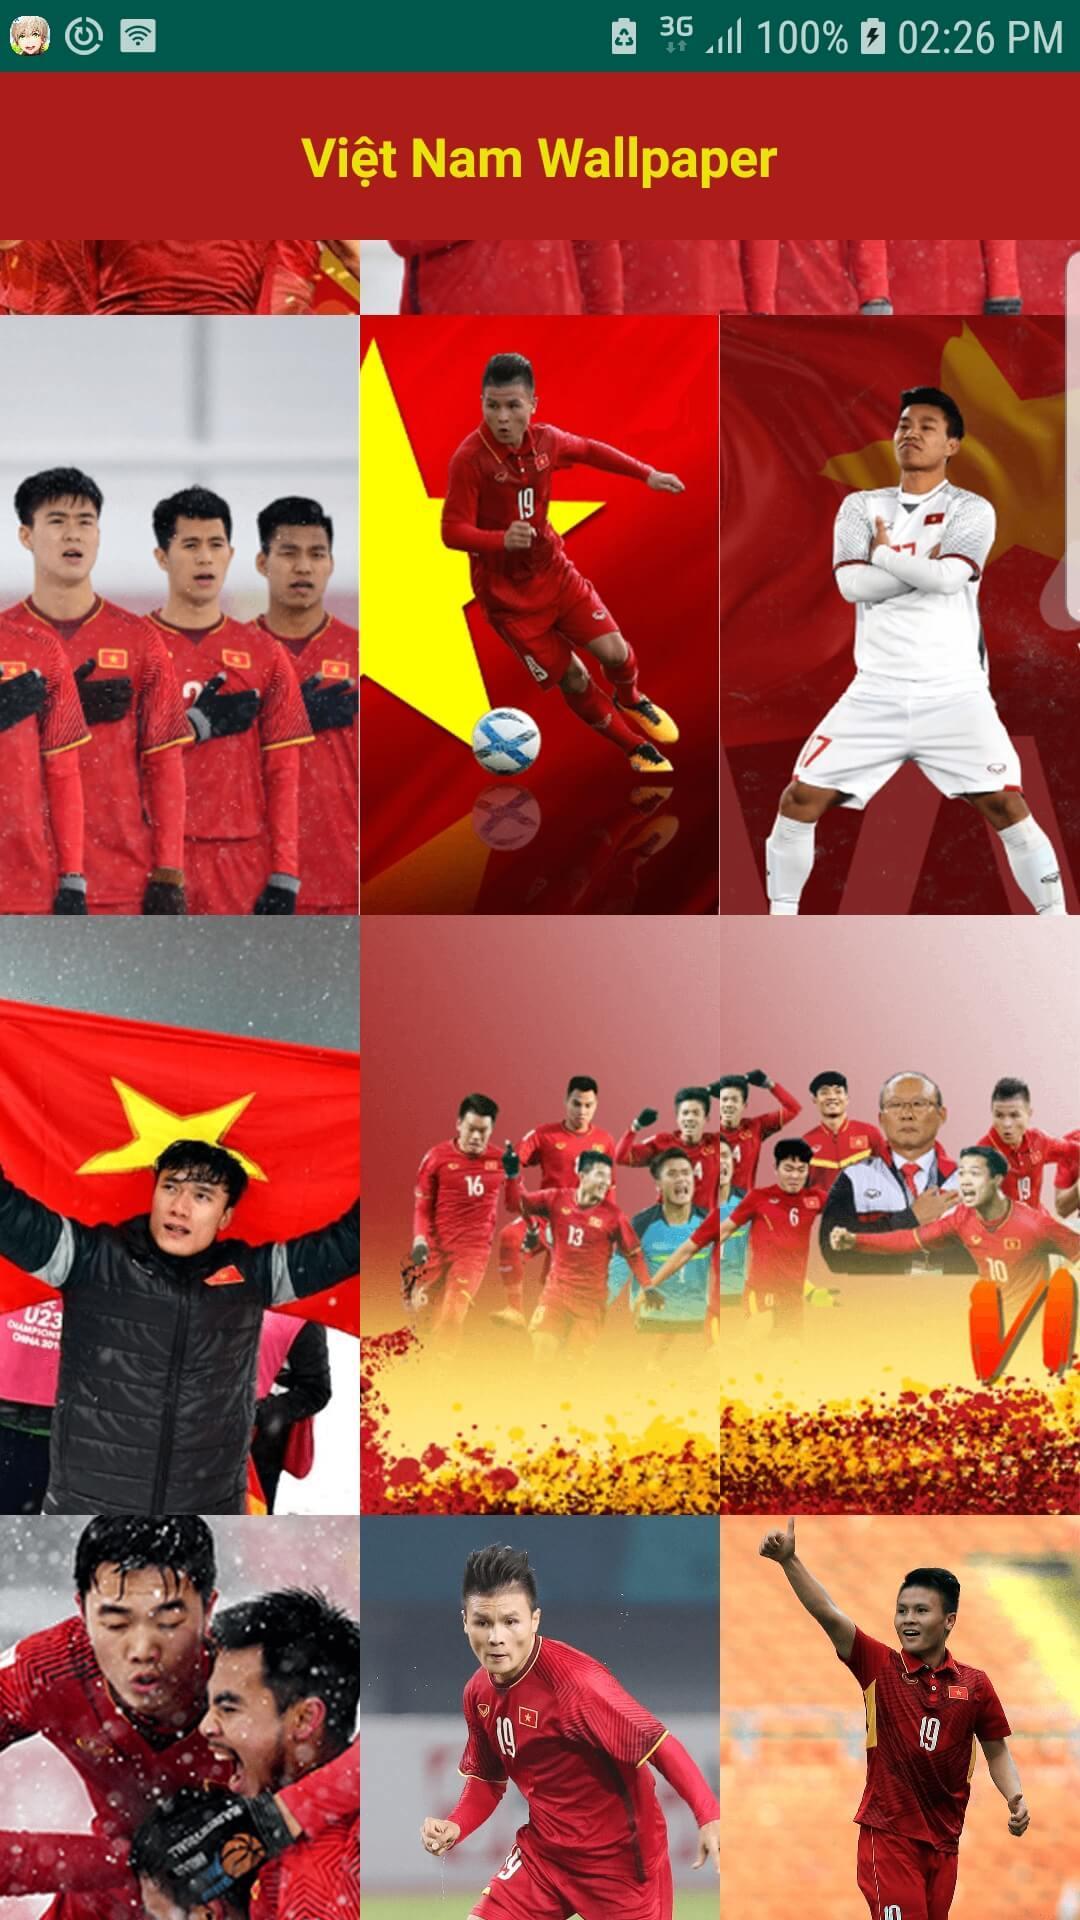 Khủng hoảng COVID-19 có thể khiến cho cuộc sống của chúng ta rất đơn điệu, nhưng với ứng dụng Hình nền bóng đá Việt Nam vô địch Wallpaper HD APK for Android, bạn có thể thỏa sức ngắm nhìn các hình nền thú vị về đội tuyển bóng đá Việt Nam.